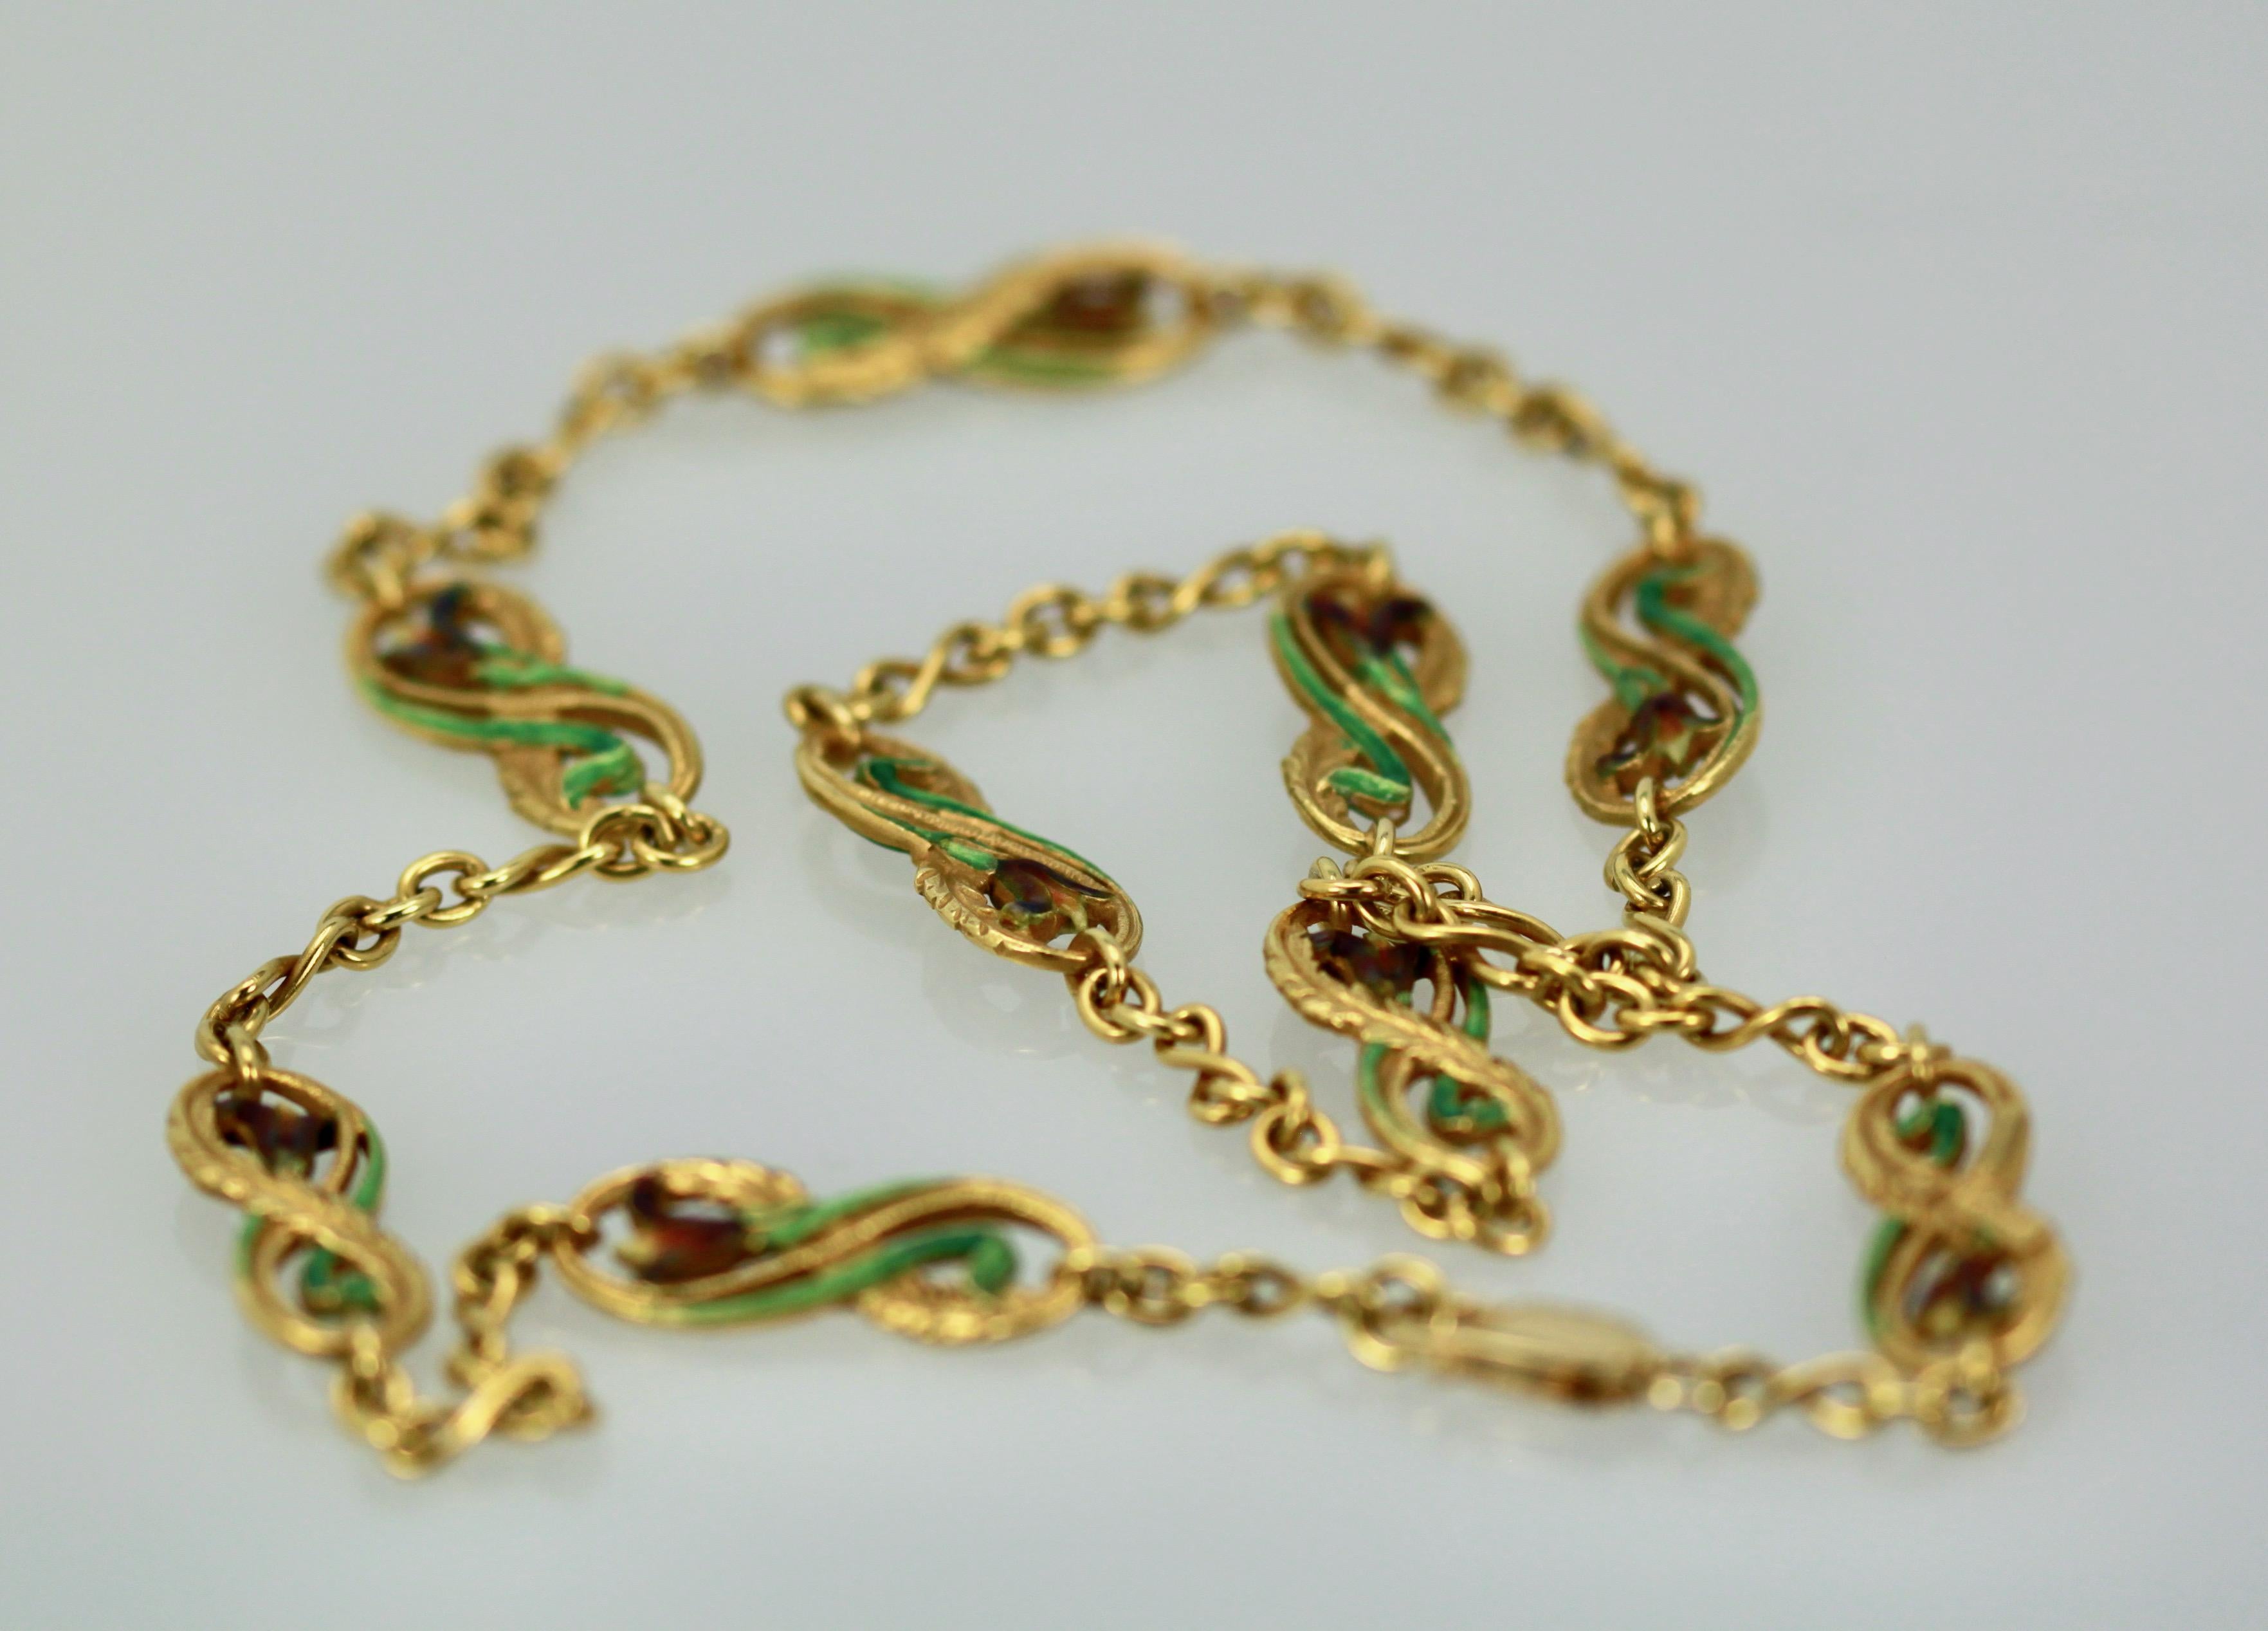 Diese Masriera Plique a Jour Halskette ist fantastisch.  Diese Ketten sind selten zu finden, da die meisten Masriera-Stücke Plique a Jour-Anhängerinnen sind. Plique a jour-Halsketten sind bei allen Herstellern selten, aber für eine Plique a jour